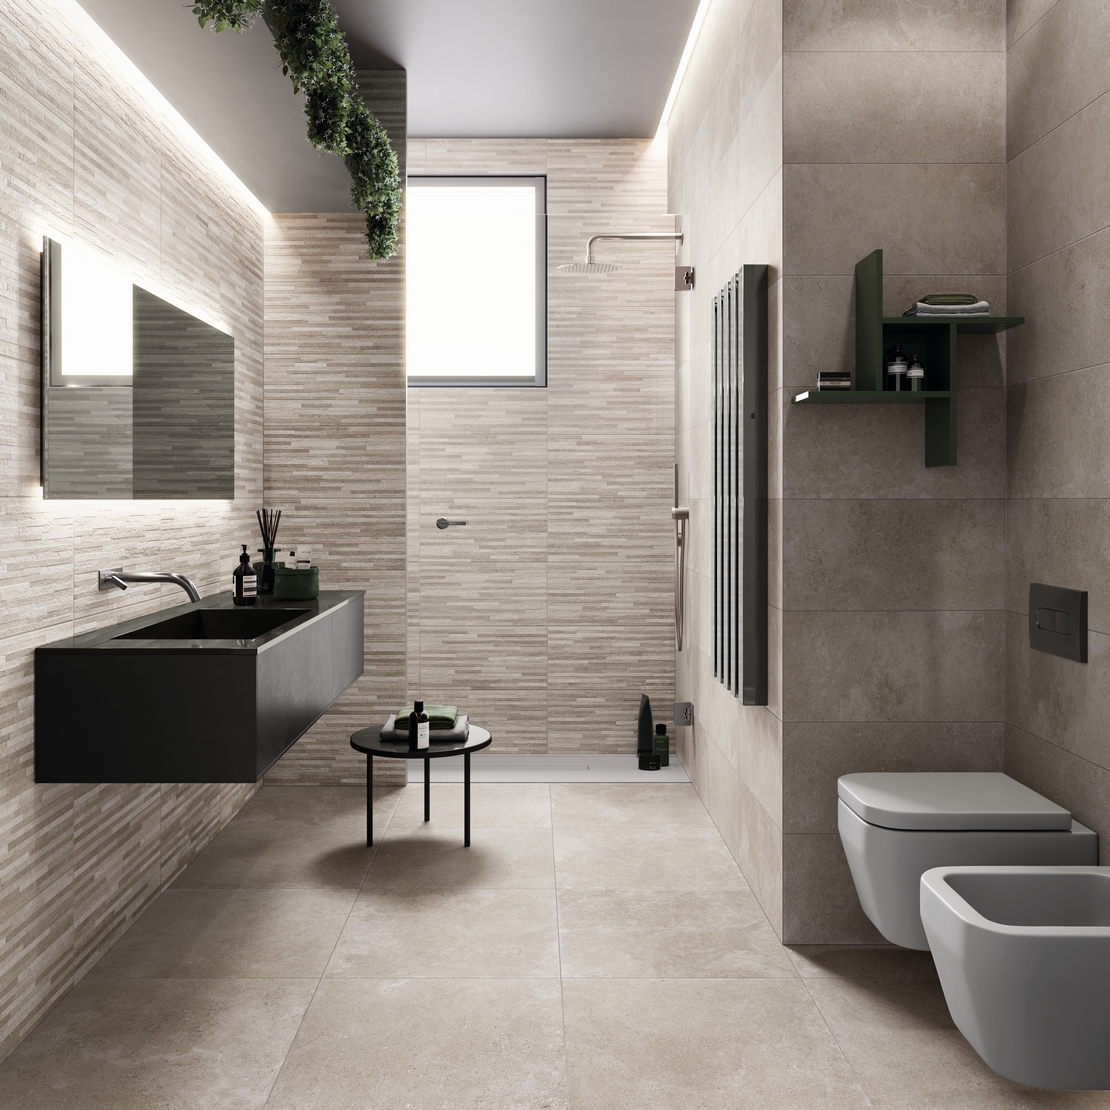 Petite salle de bains moderne en longueur avec douche. Effet pierre grise minimaliste. - Inspirations Iperceramica